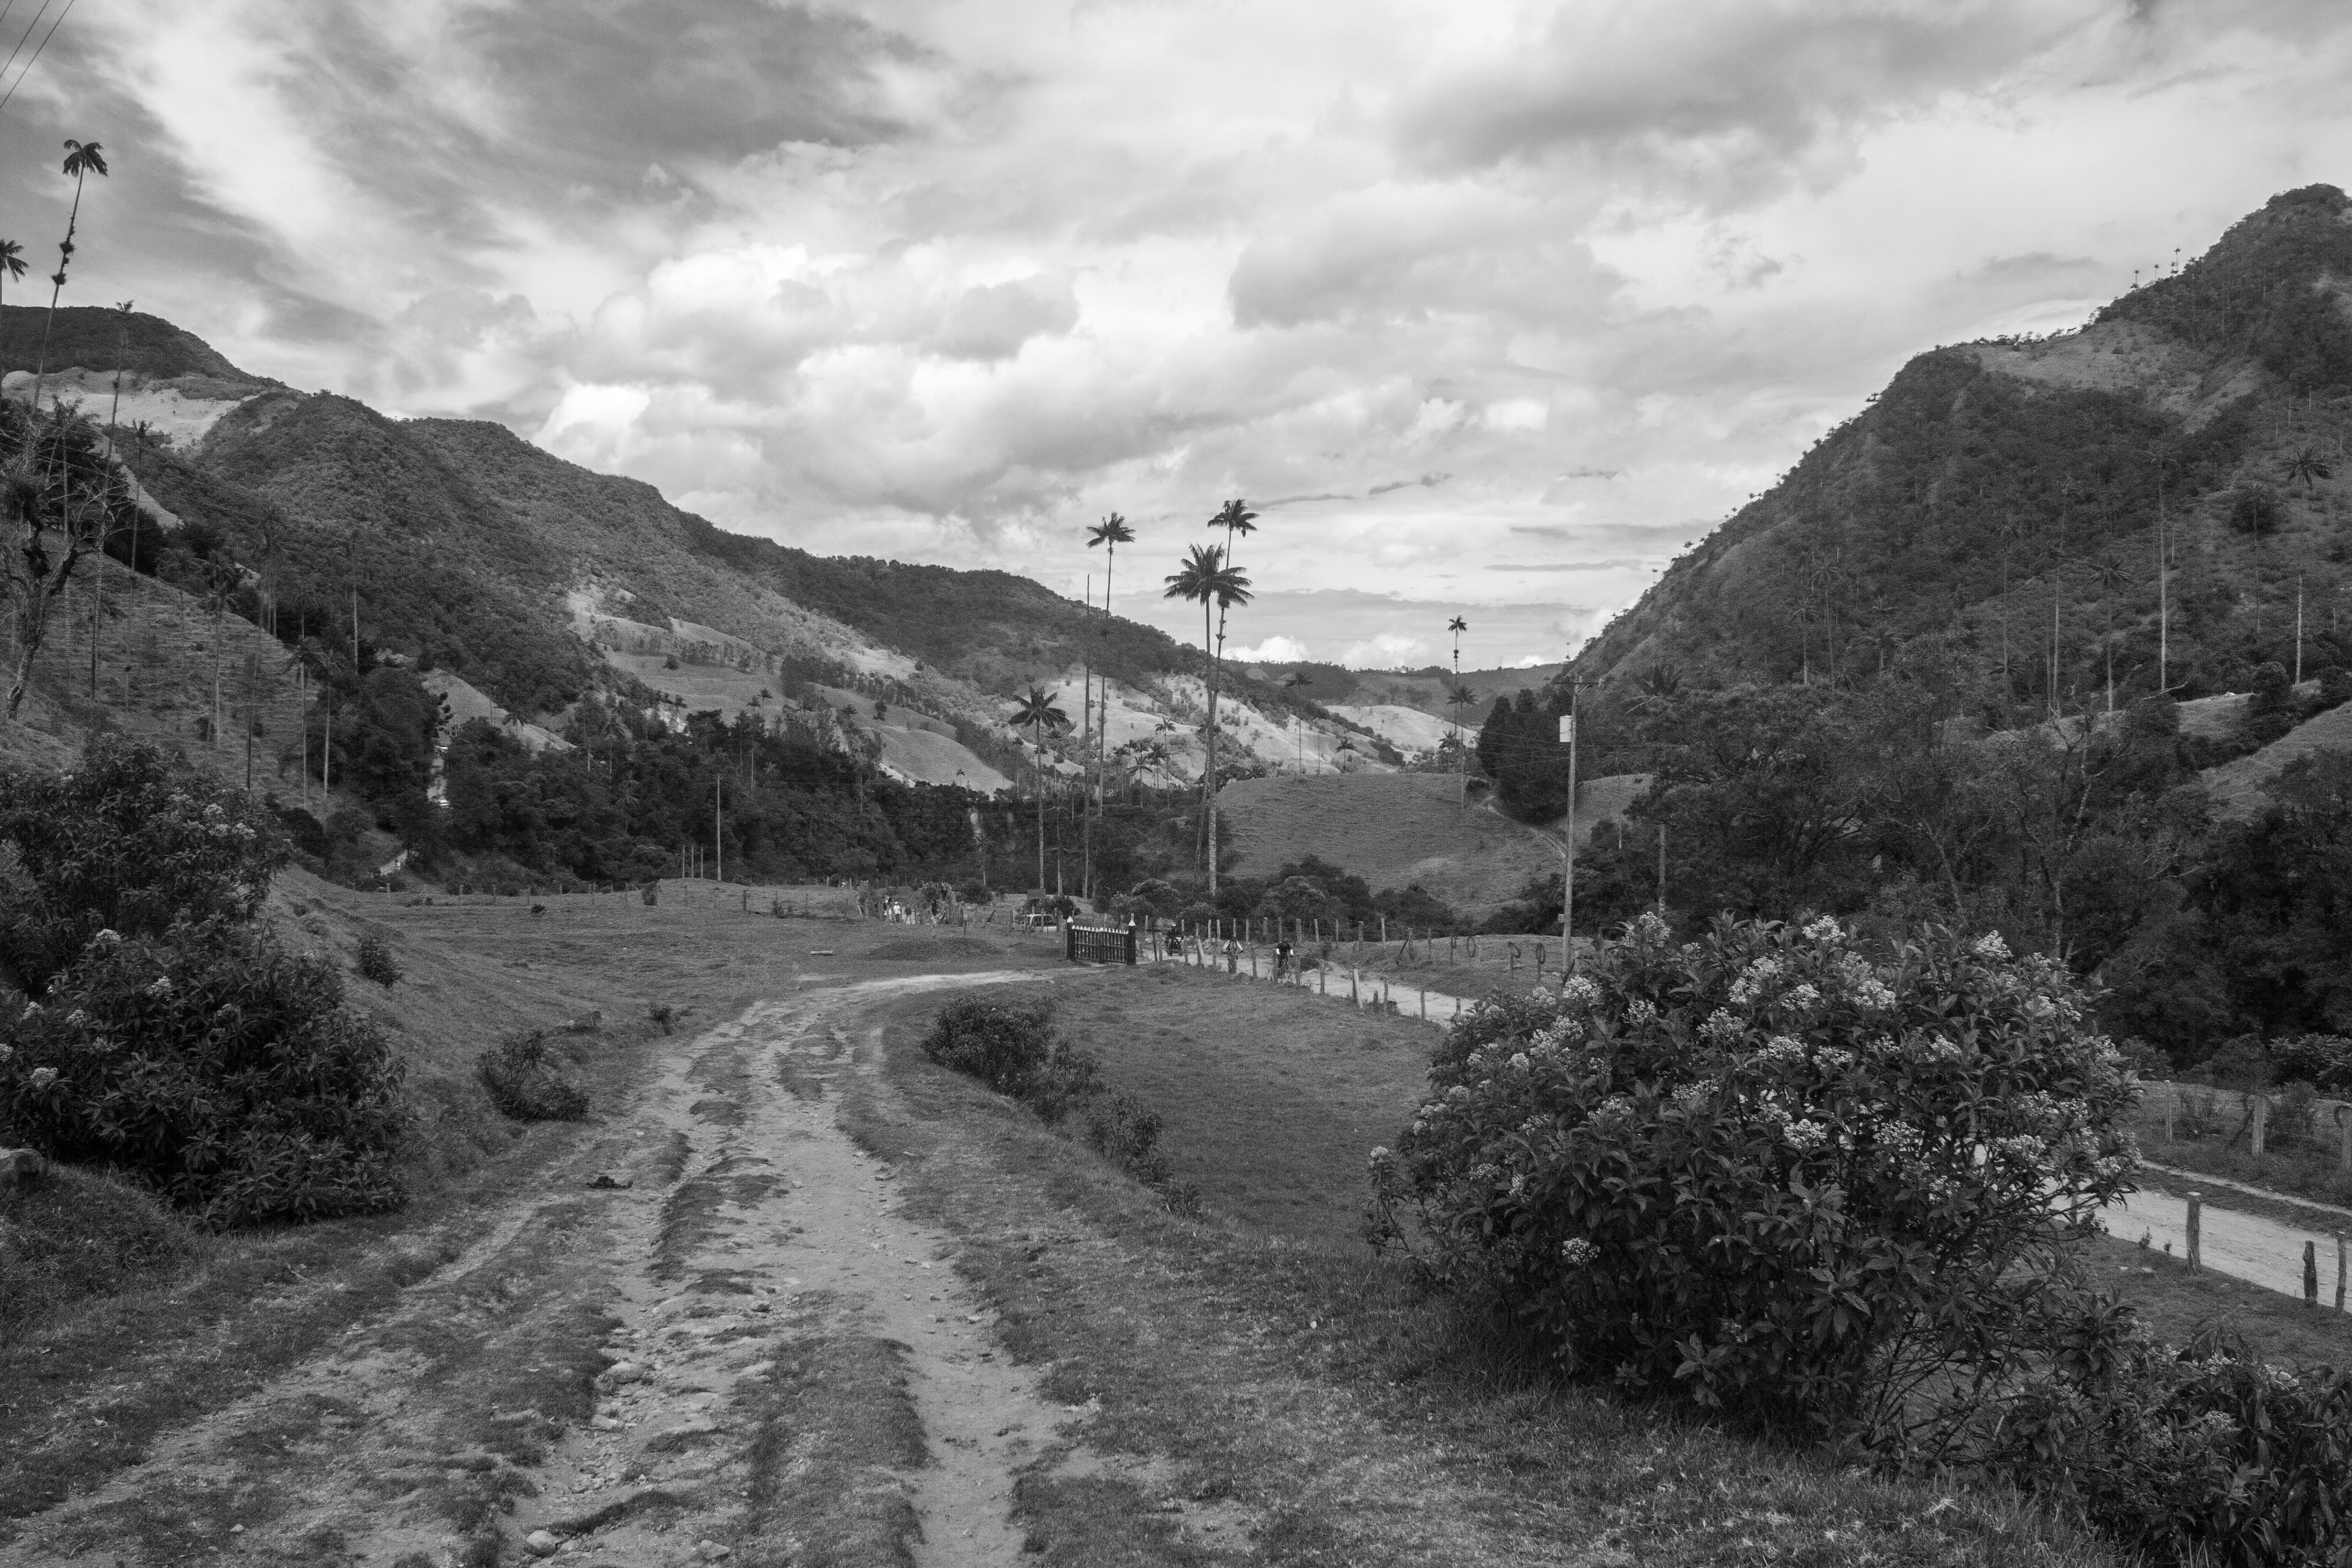 El camino Valle del Cocora, El Quindío, Colombia